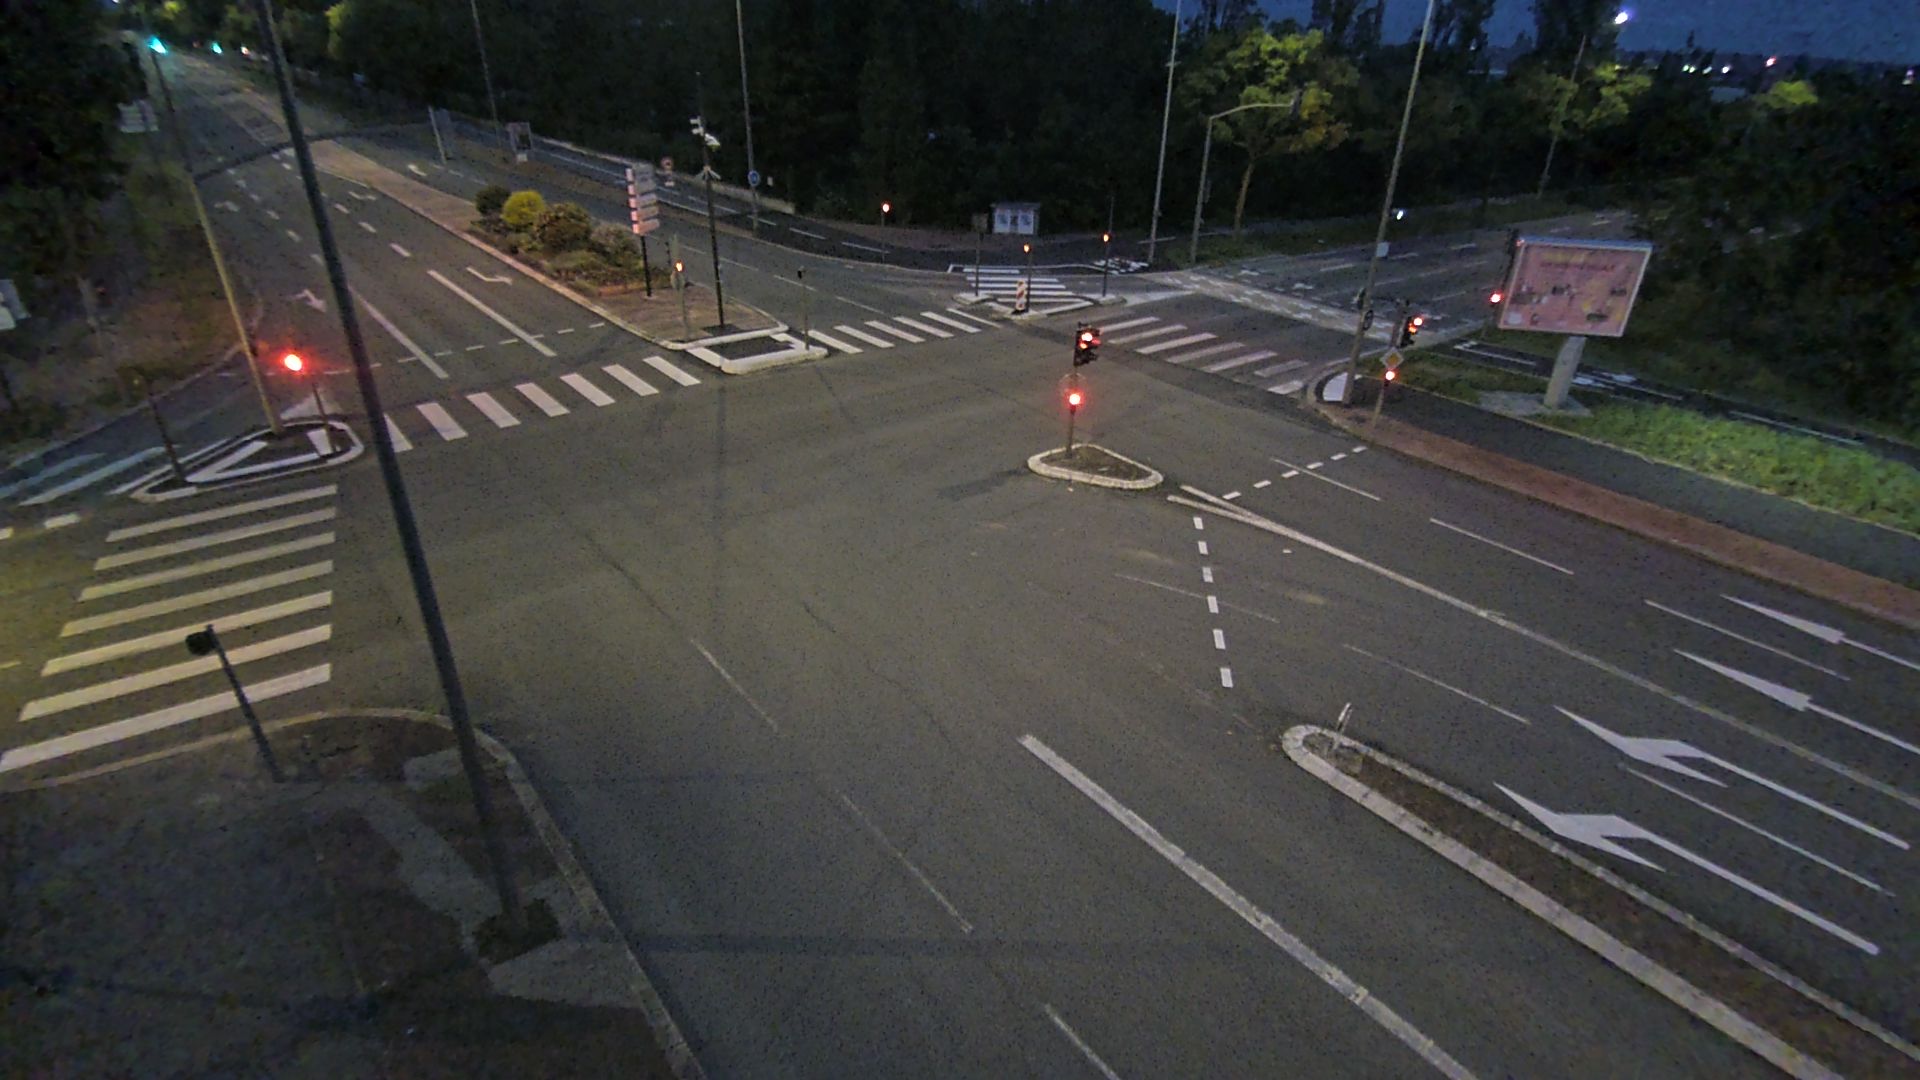 Webcam proche de l'A43 à Bron à la jonction entre le Boulevard de l'Université (D112) et l'avenue Général de Gaulle (D506). Vue orientée vers Eurexpo